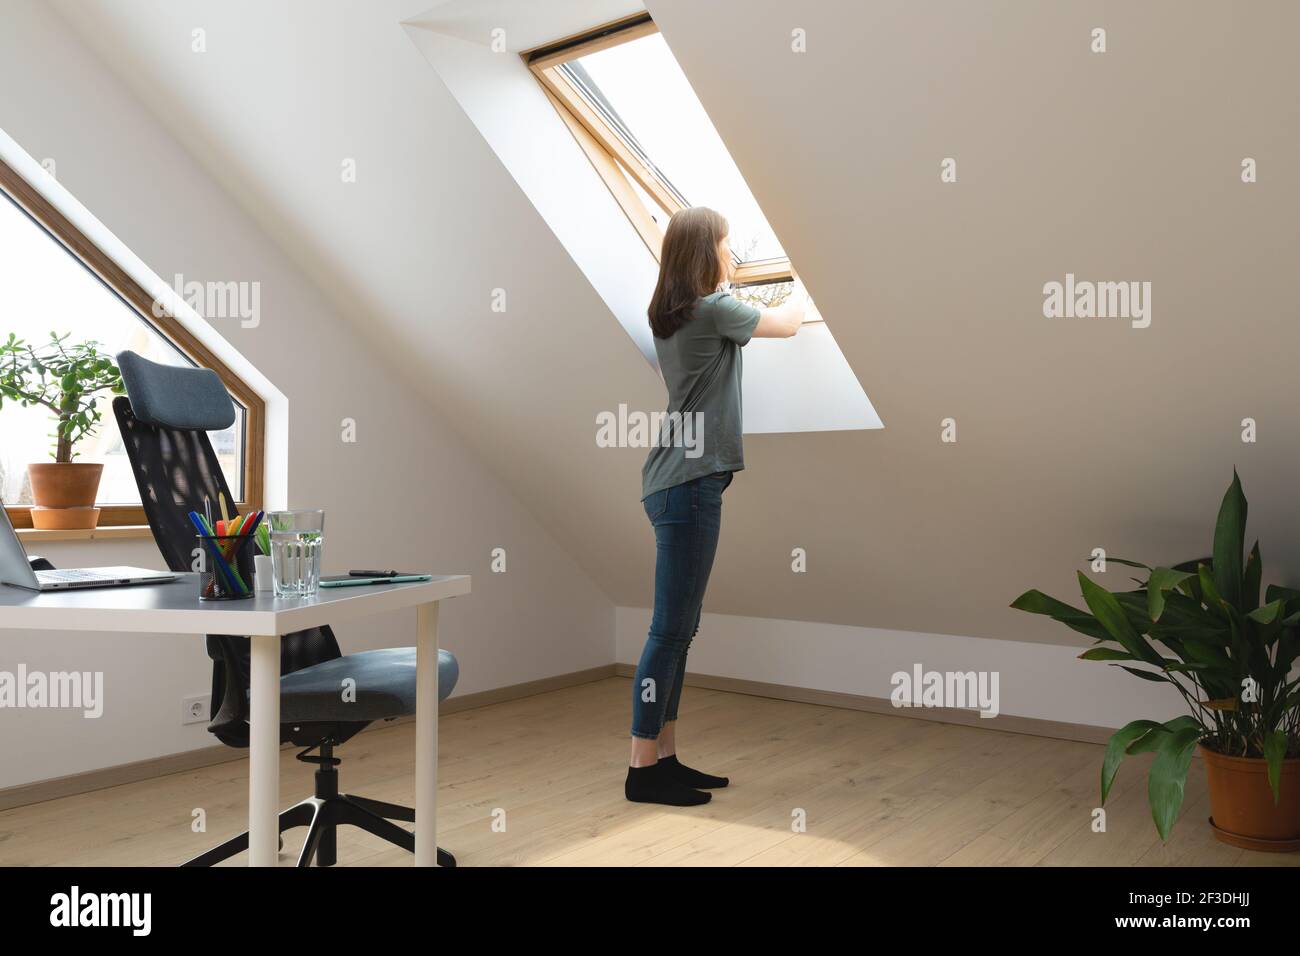 Le donne aprono una finestra in ufficio domestico e lasciano entrare aria fresca. Ambiente di lavoro sano in nuove ore lavorative normali. Foto Stock